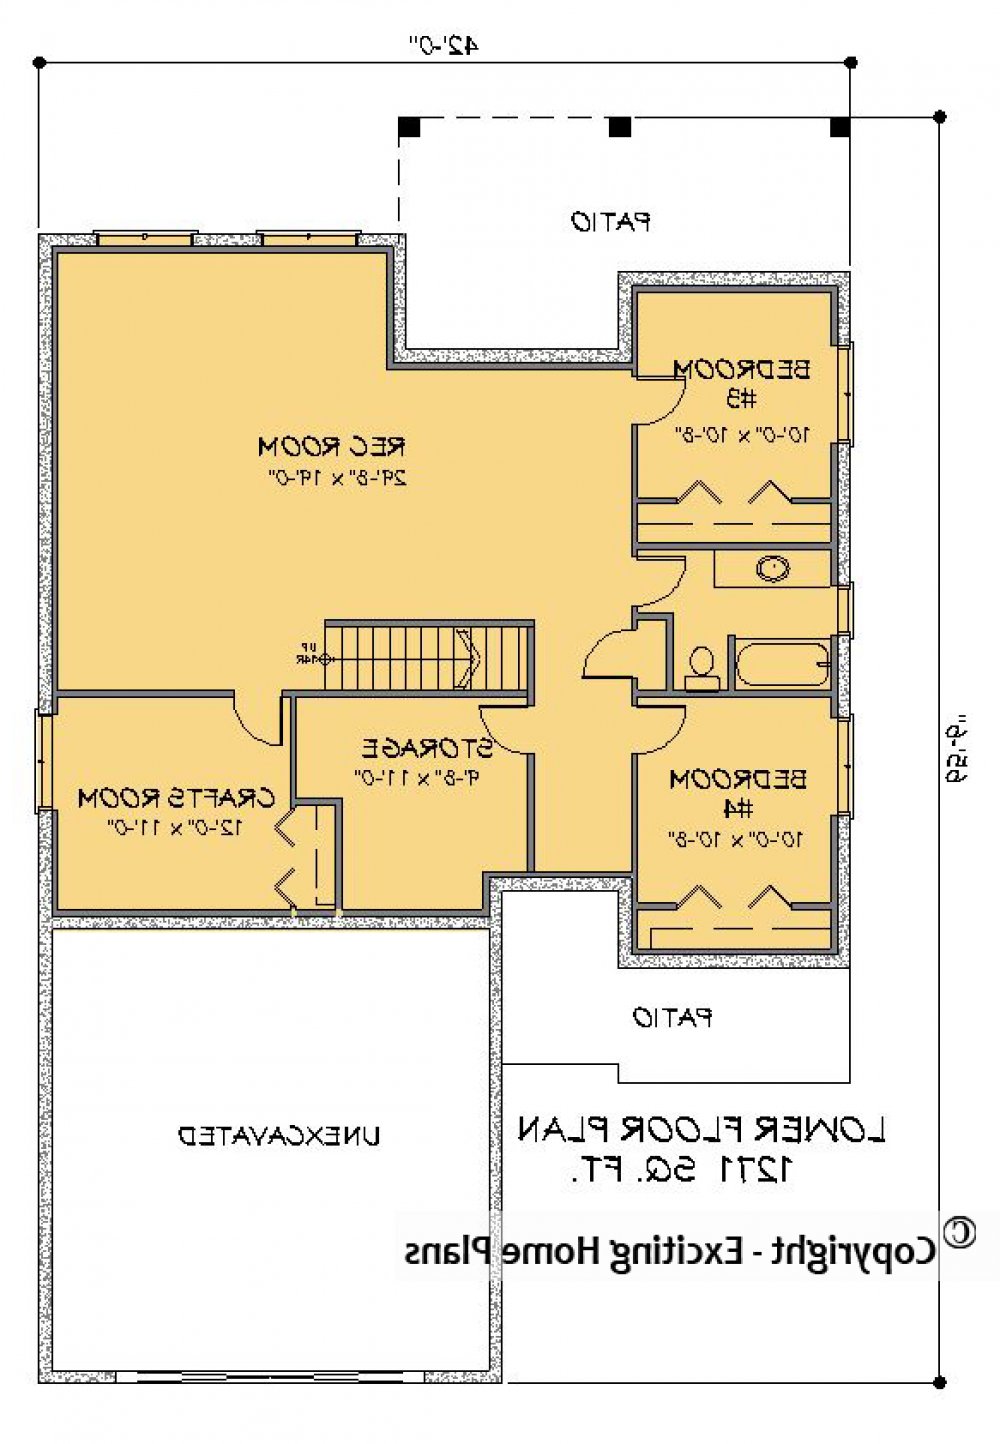 House Plan E1518-10 Lower Floor Plan REVERSE